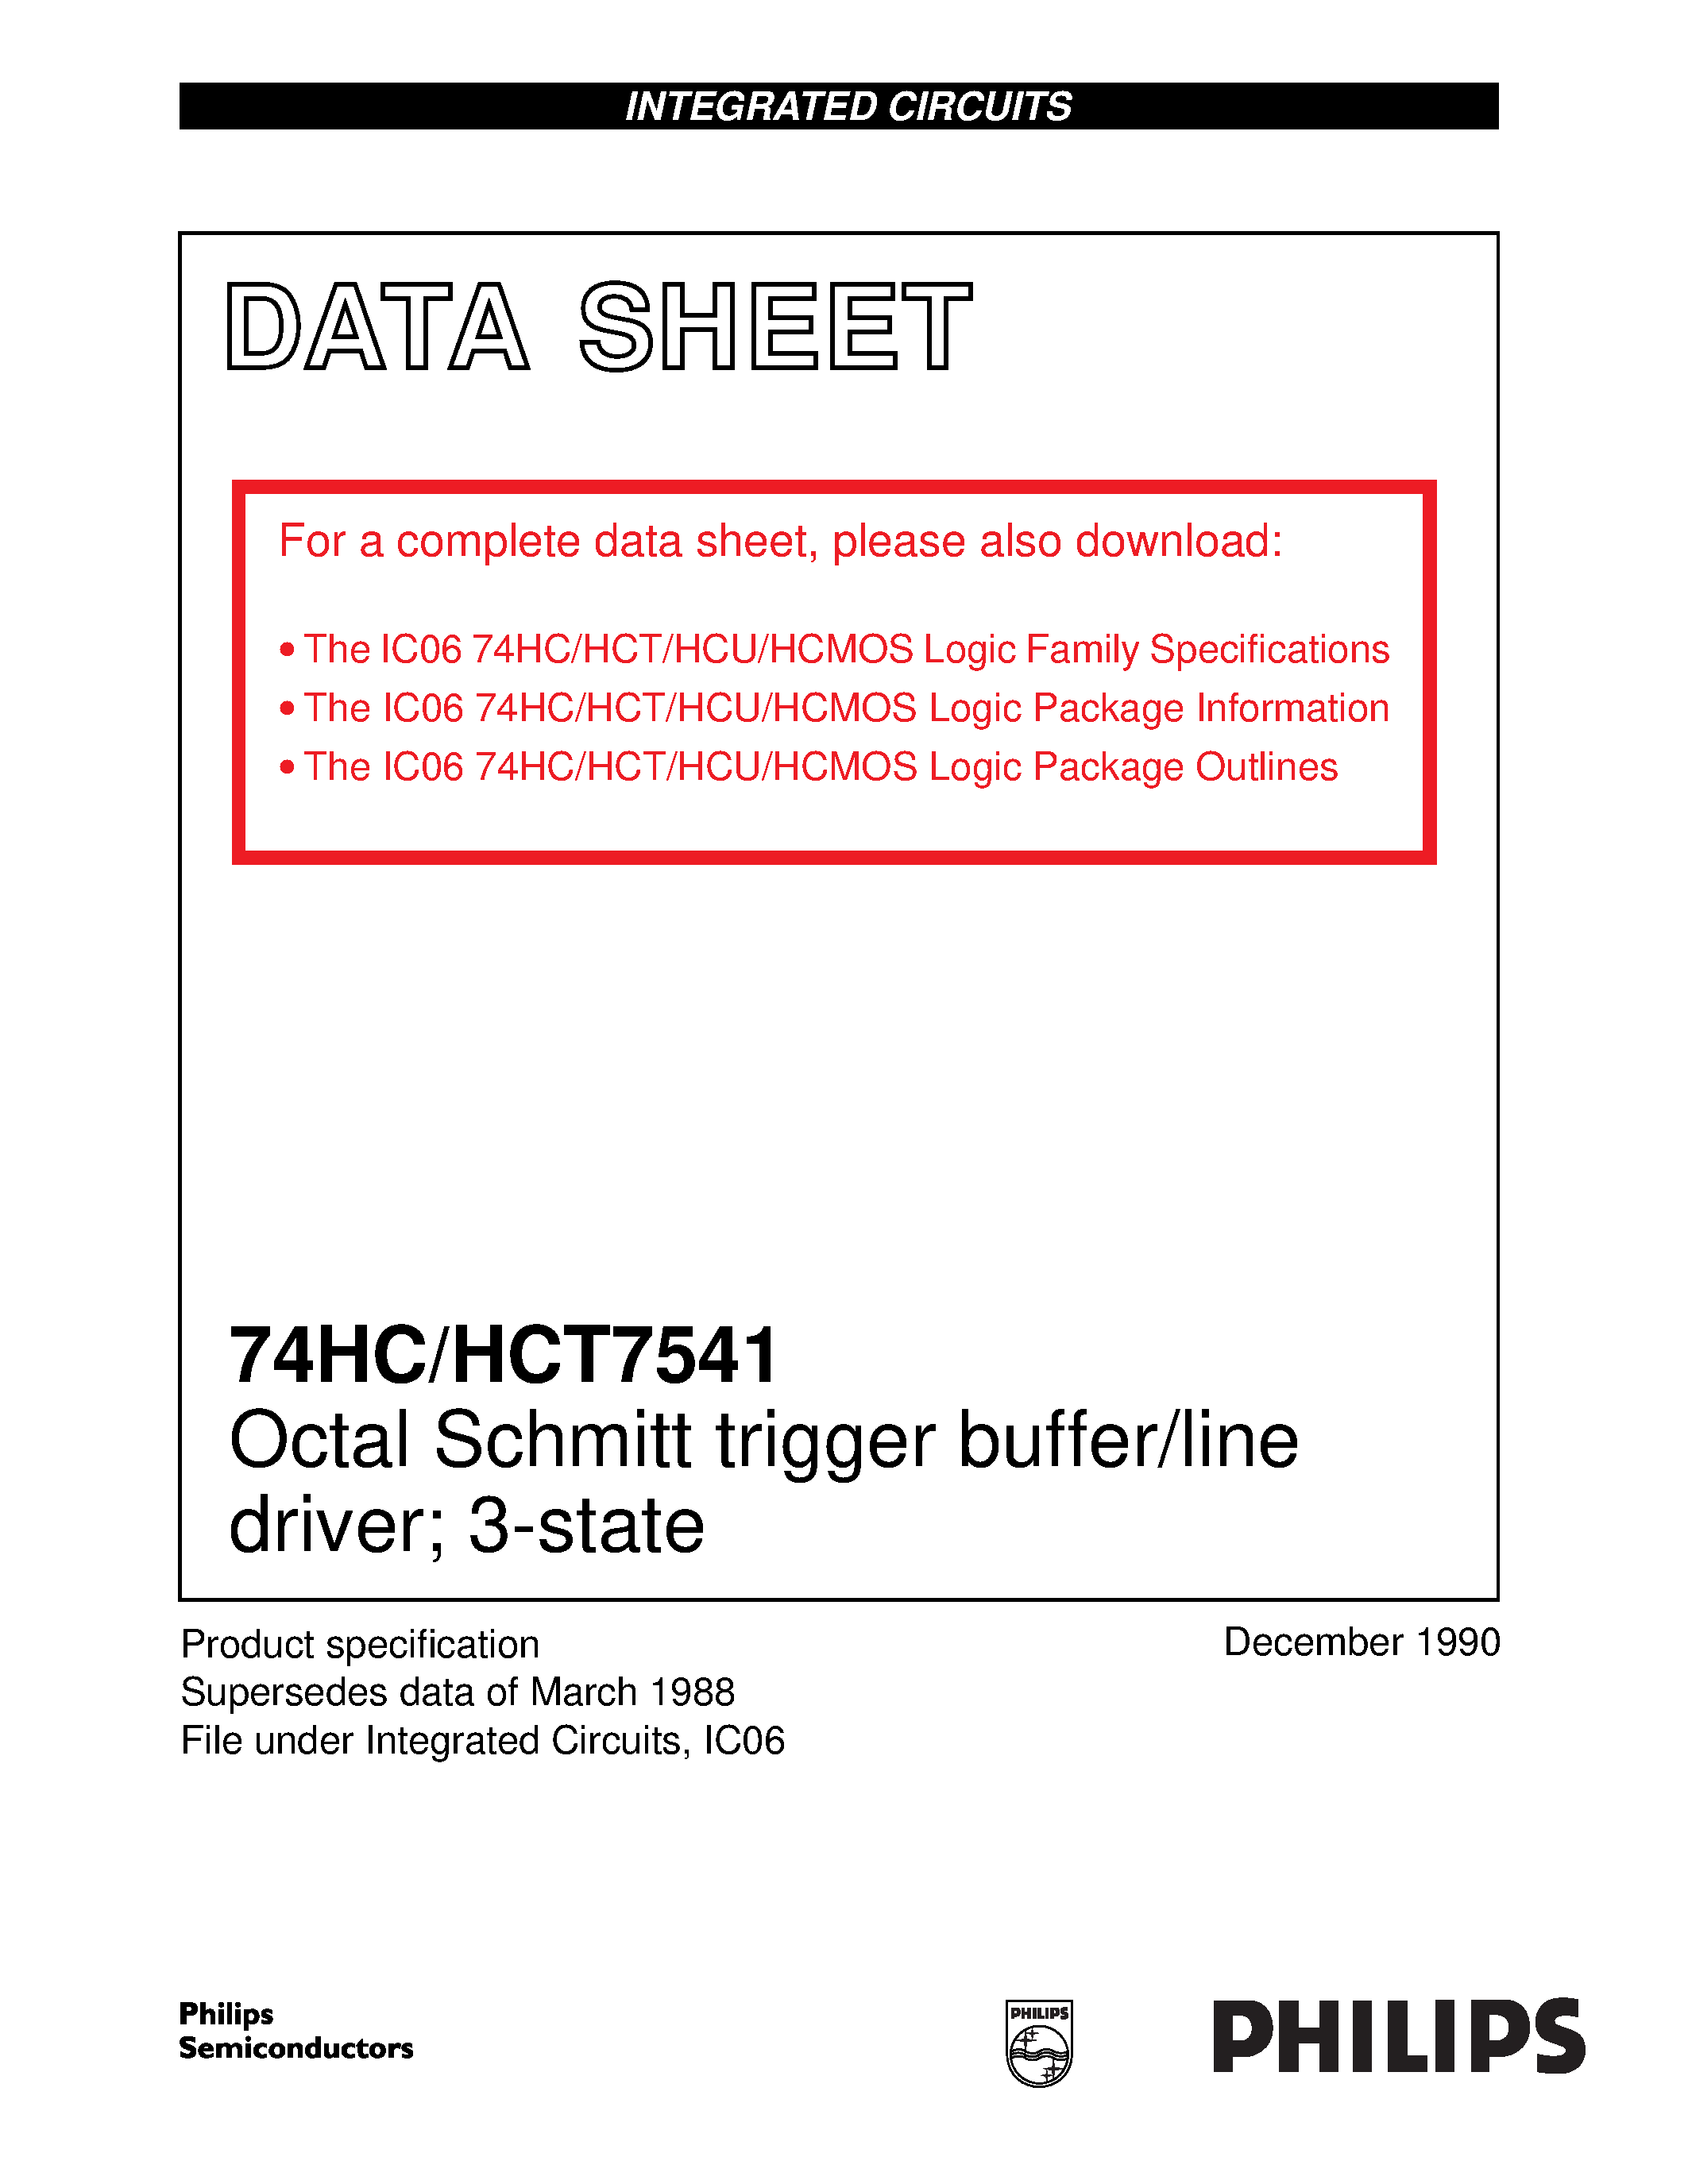 Datasheet 74HCT7541 - Octal Schmitt trigger buffer/line driver; 3-state page 1